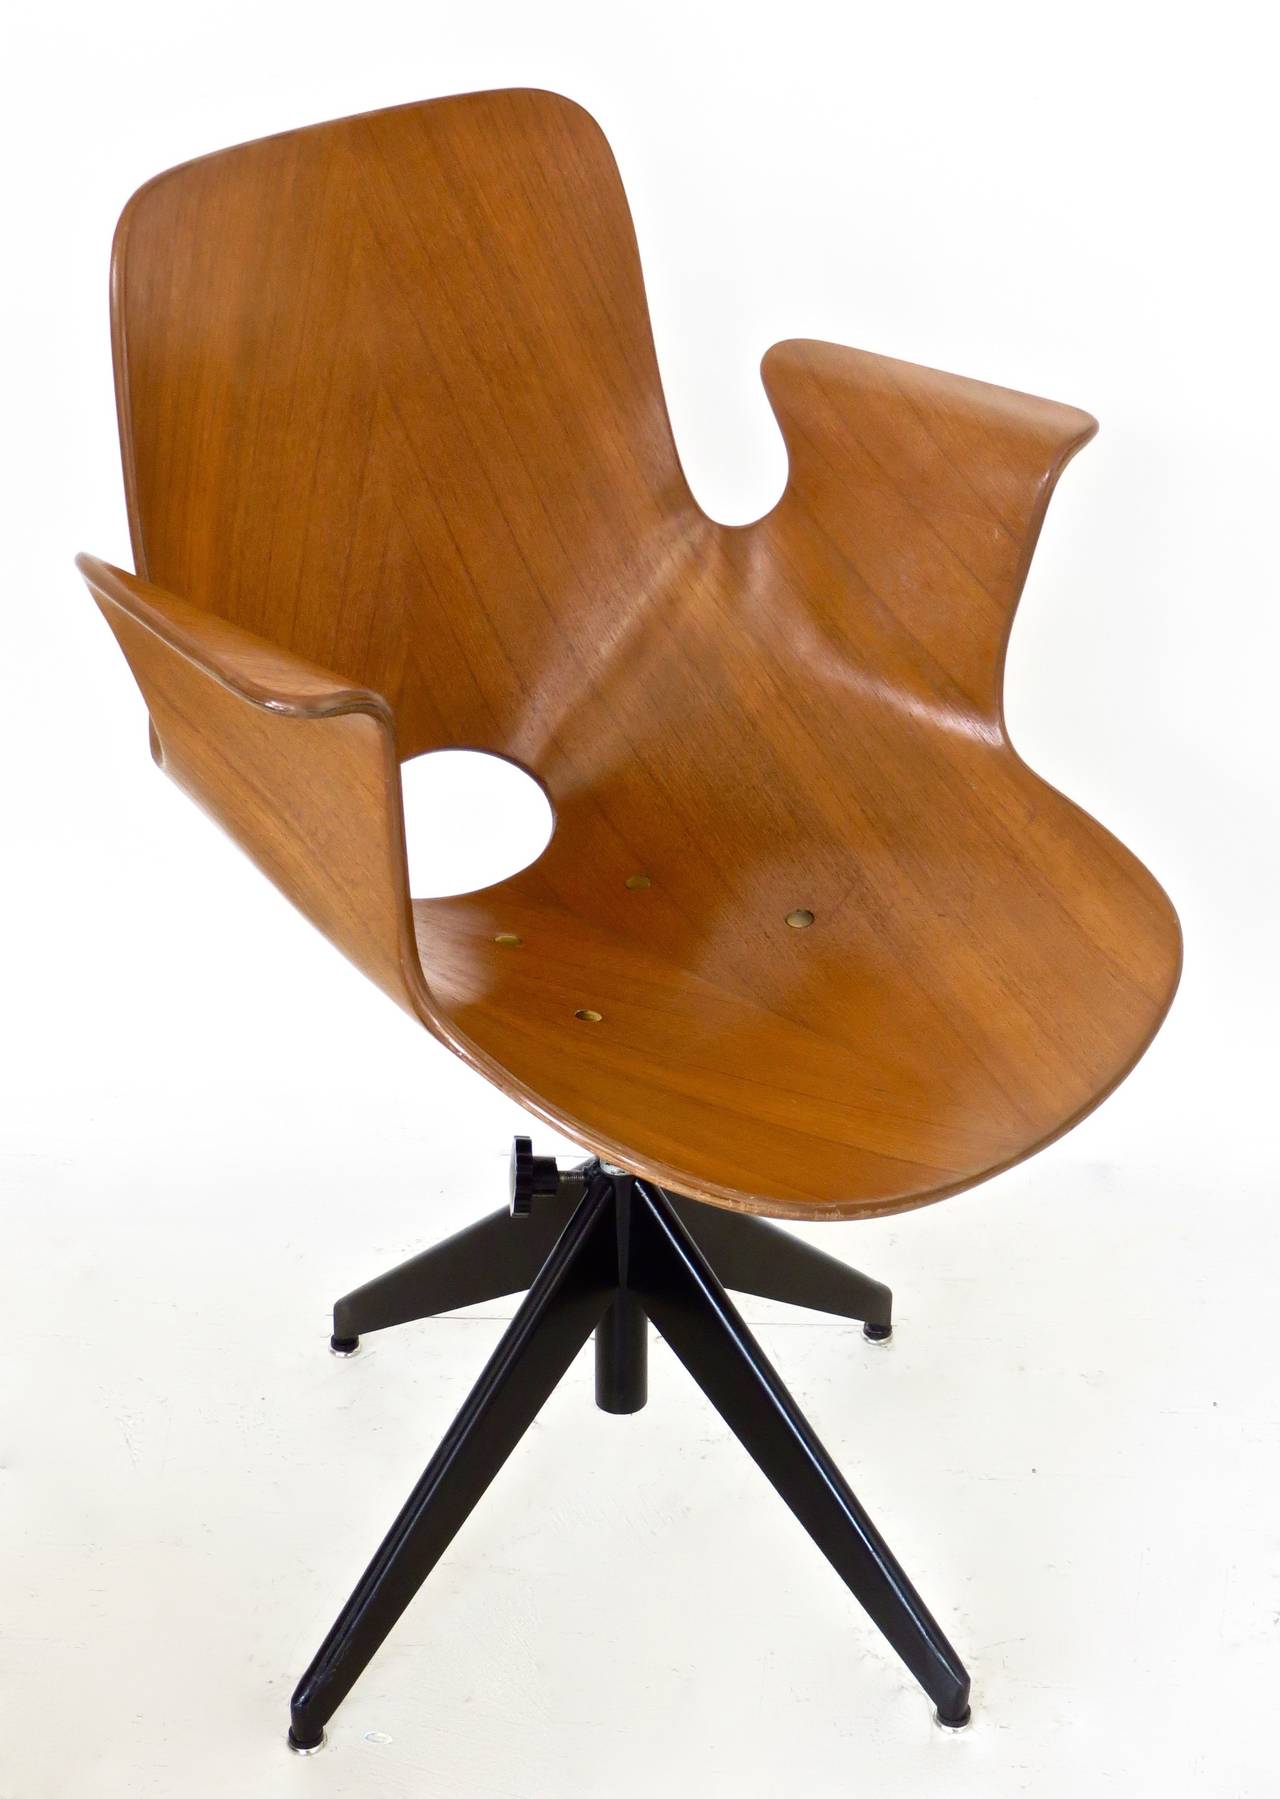 Mid-20th Century Italian Medea Desk Chair by Vittorio Nobili for Tagliabue